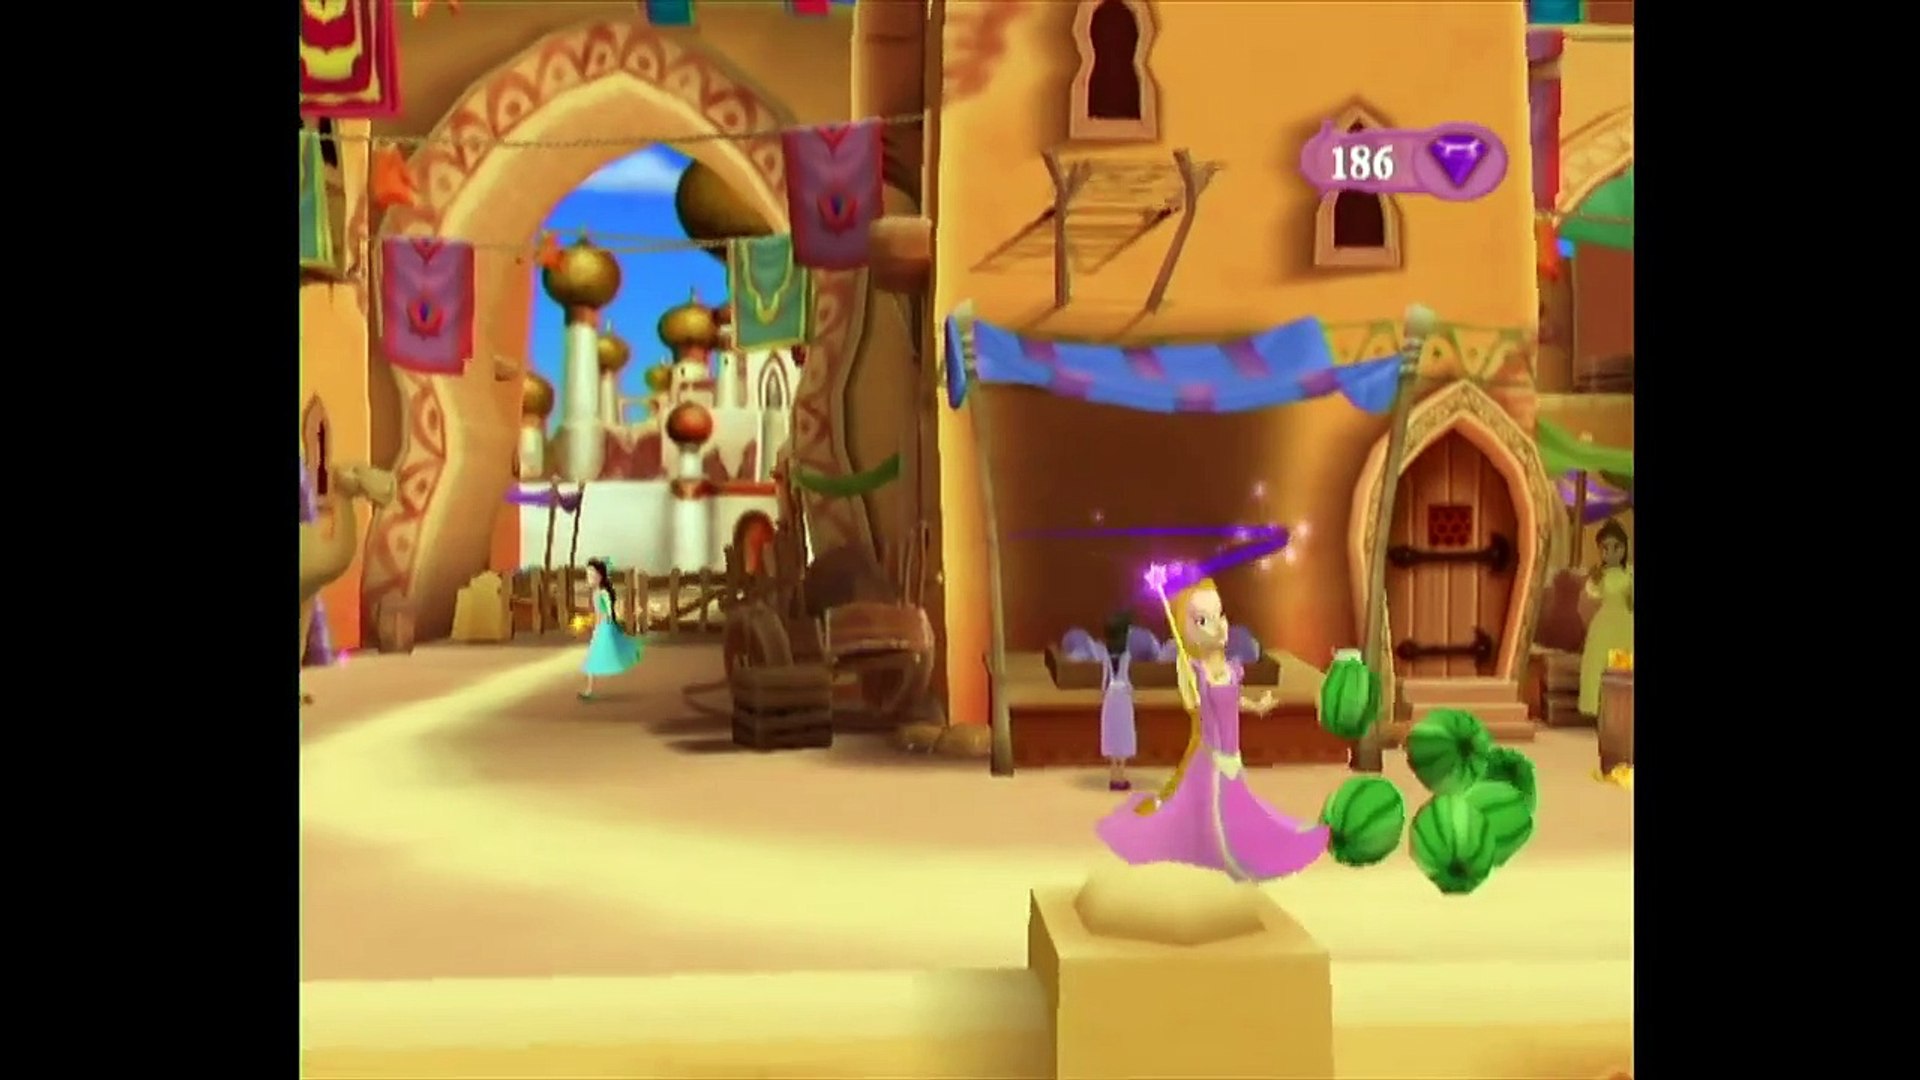 Disney Princess - Enchanted Journey (USA) para ps2